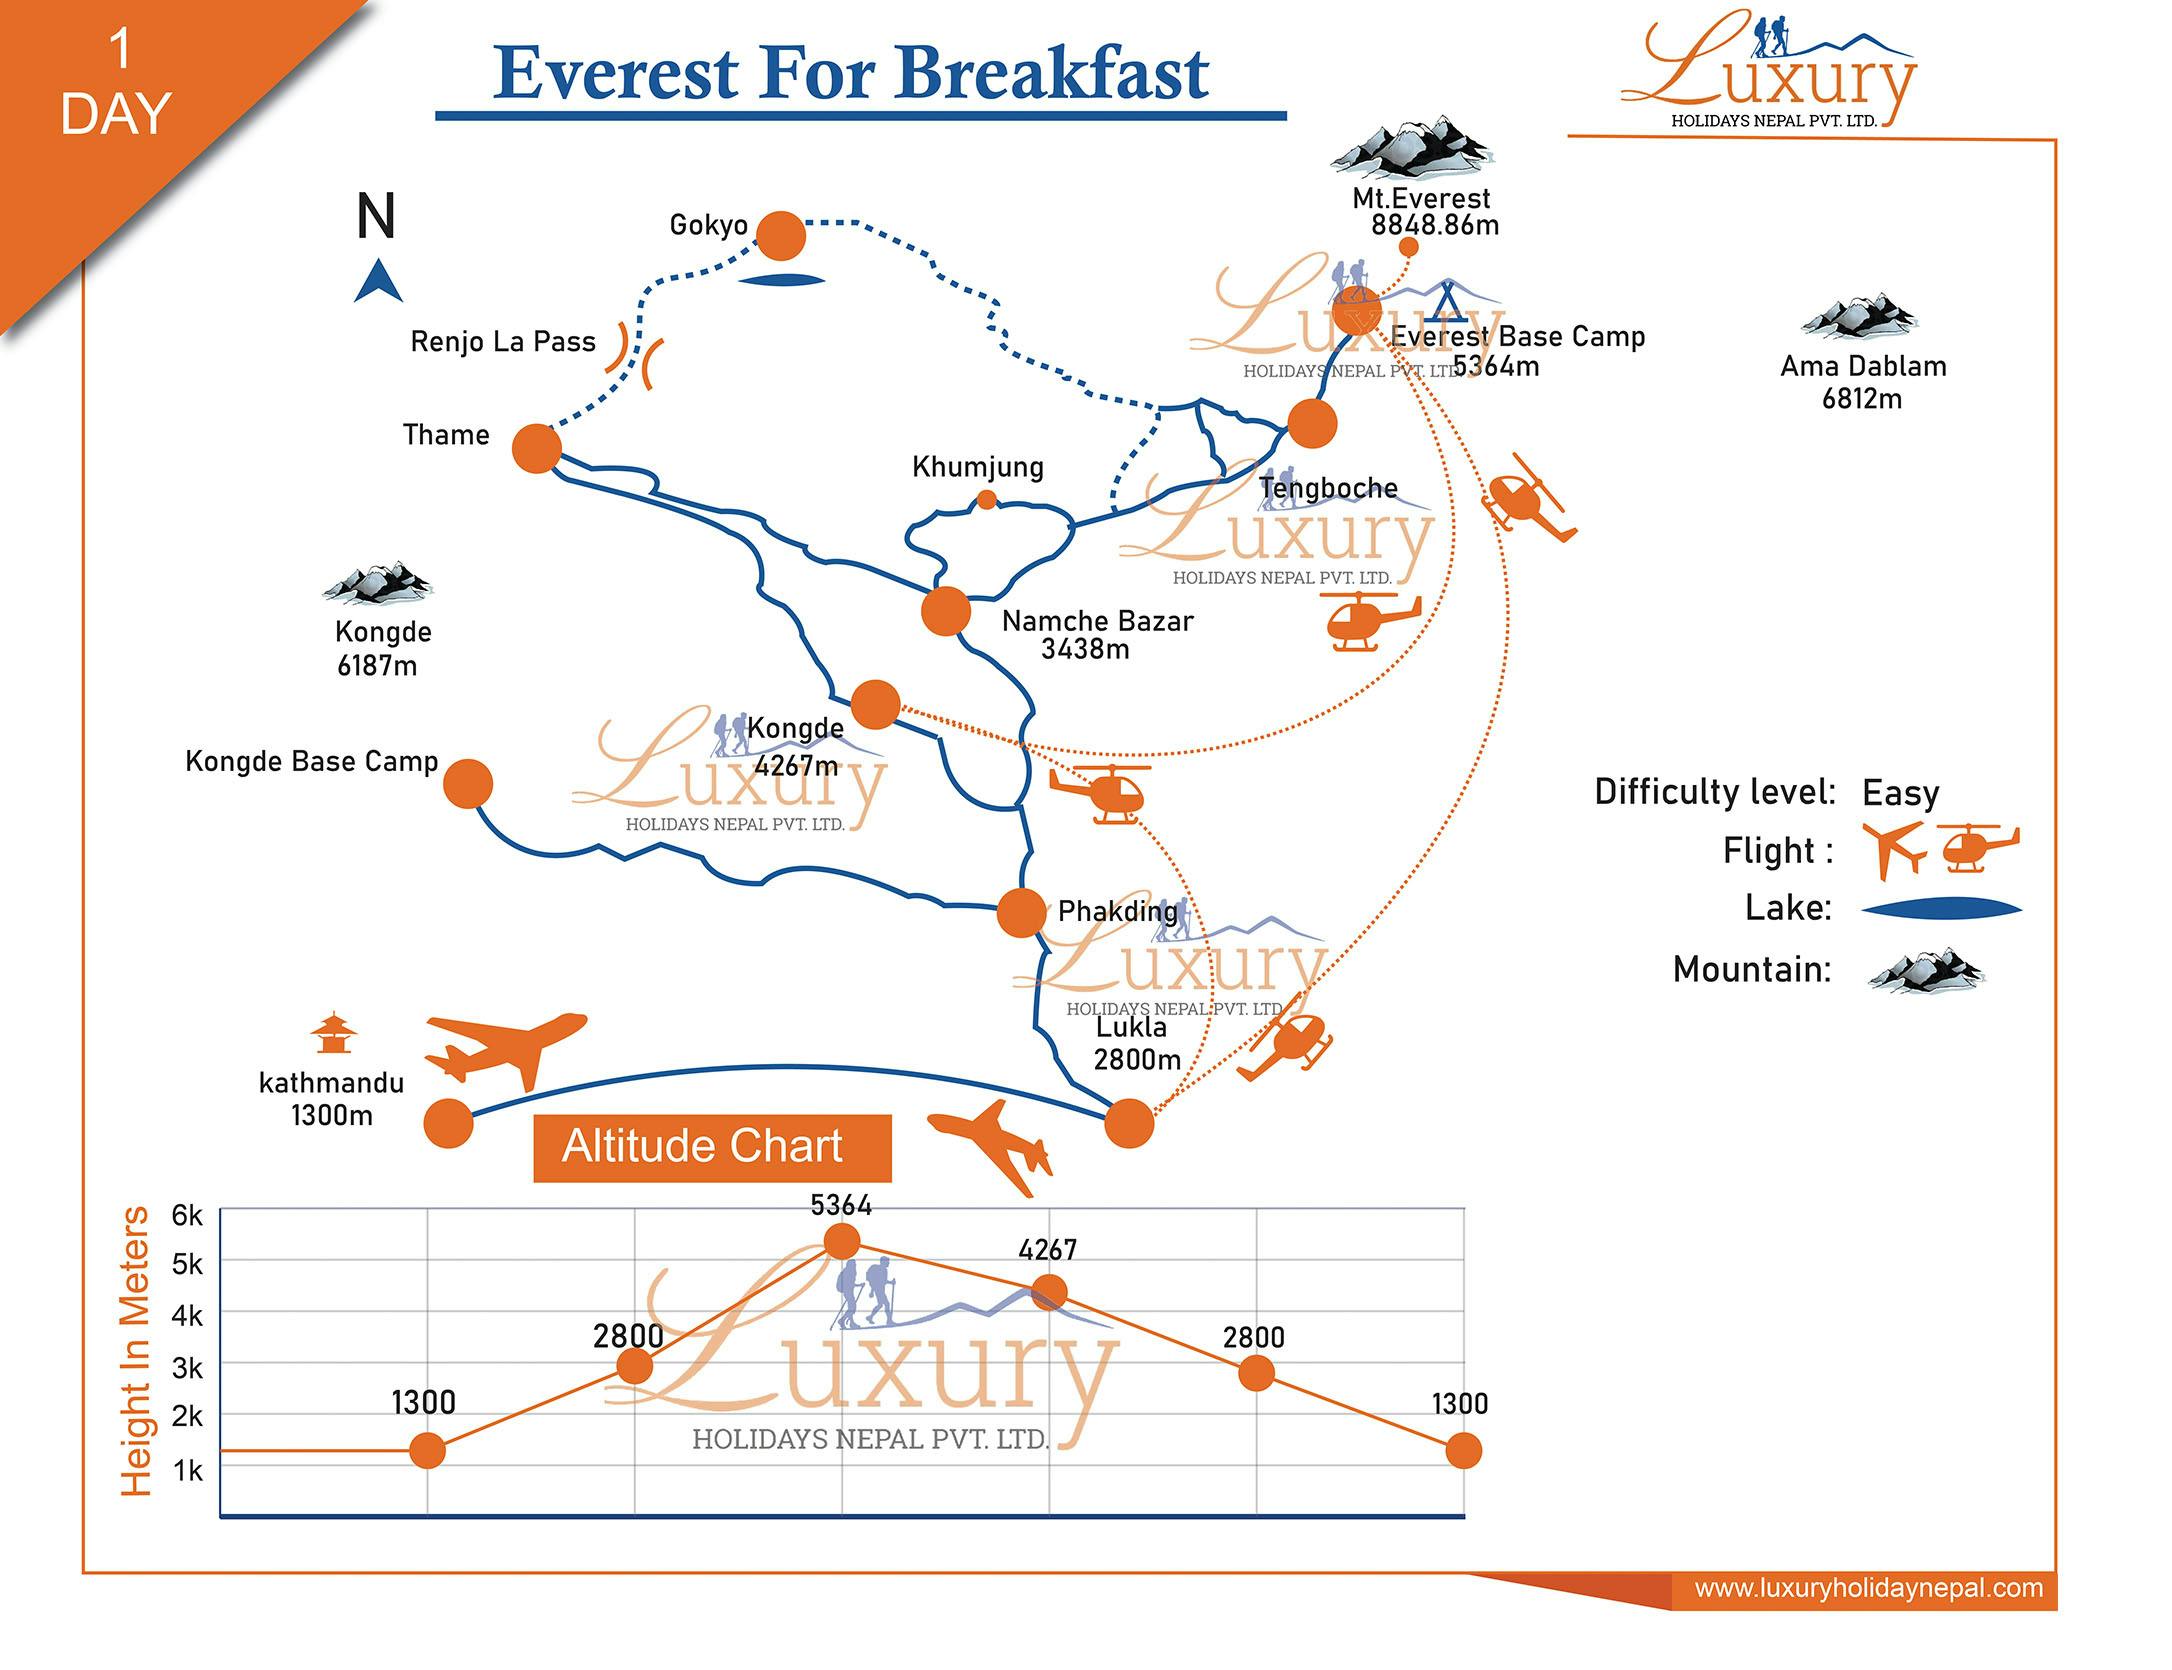 Everest for BreakfastMap